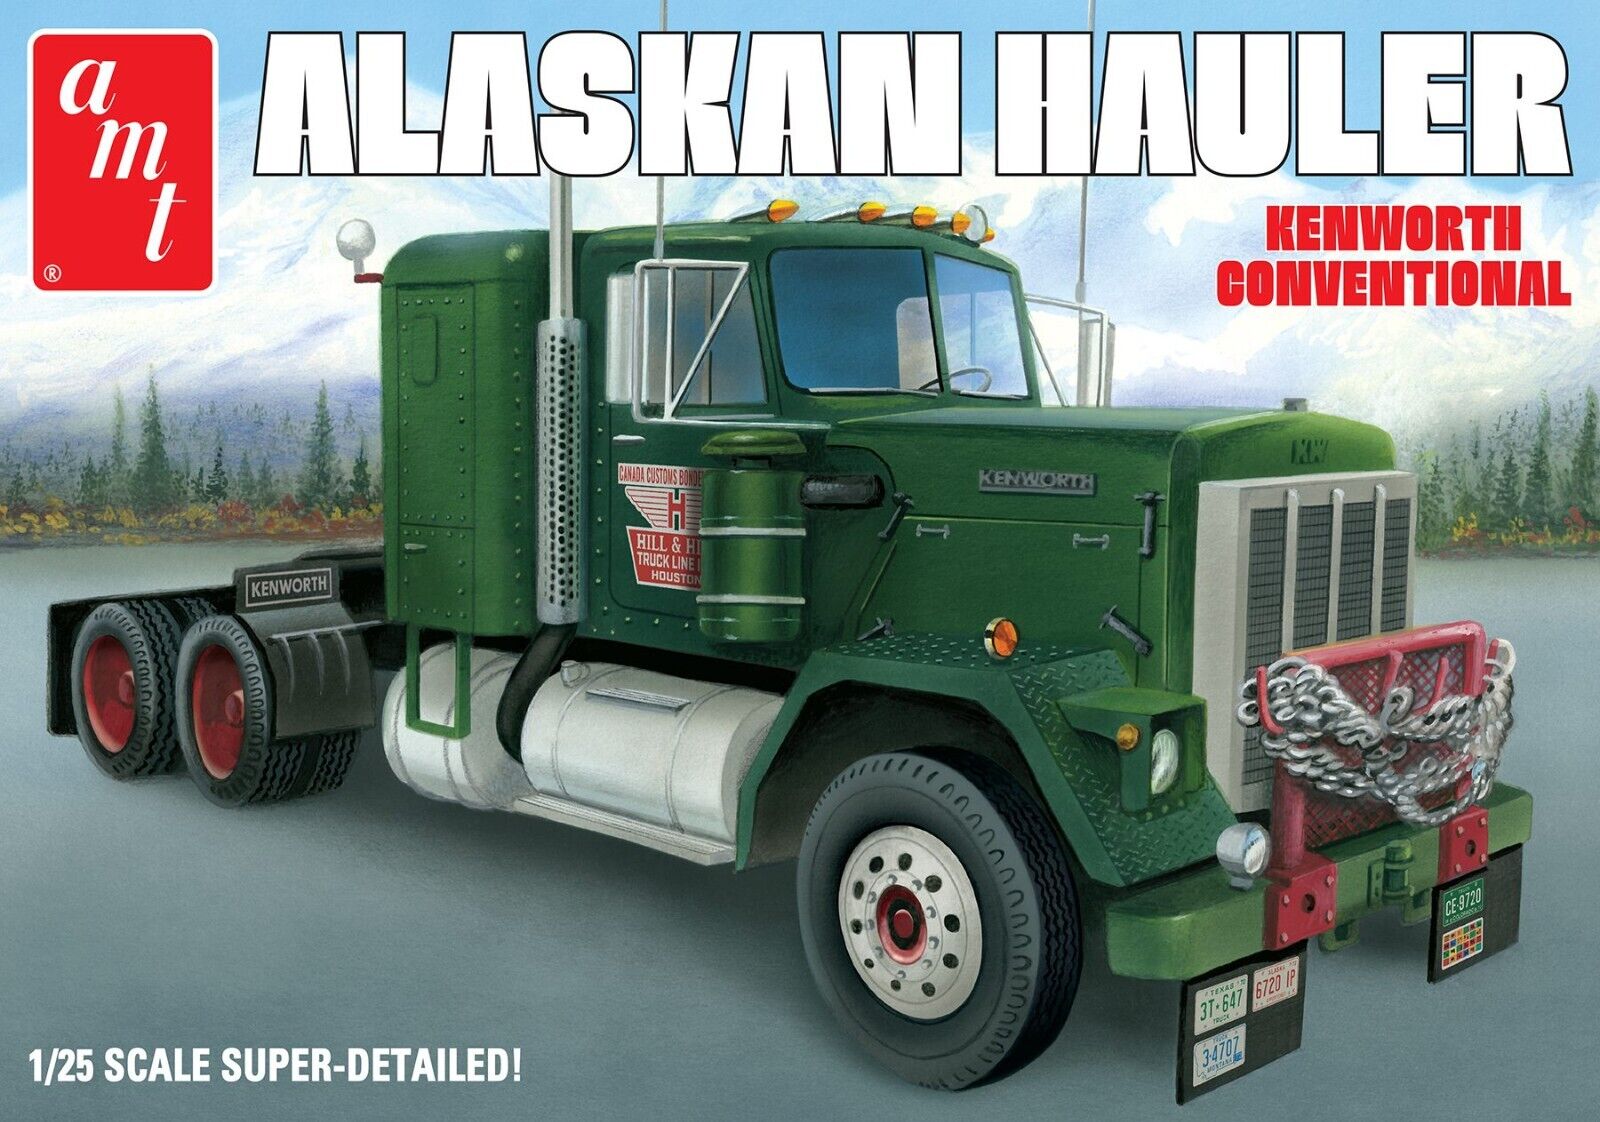 Alaskan Hauler Kenworth Conventional Truck